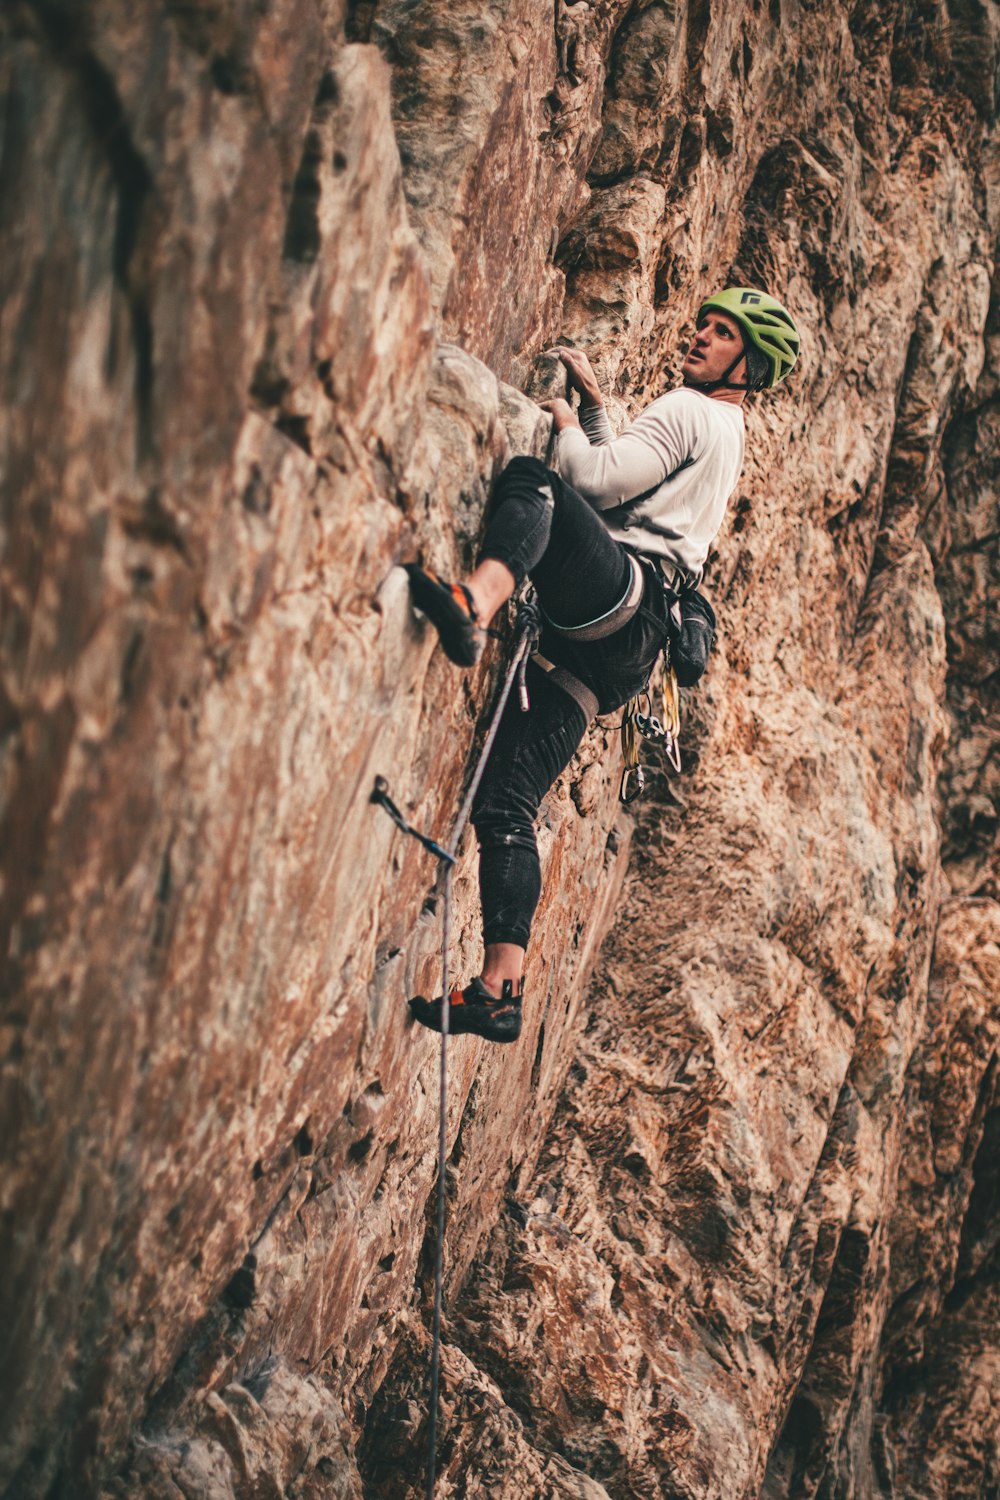 man in black jacket climbing on brown rock mountain during daytime